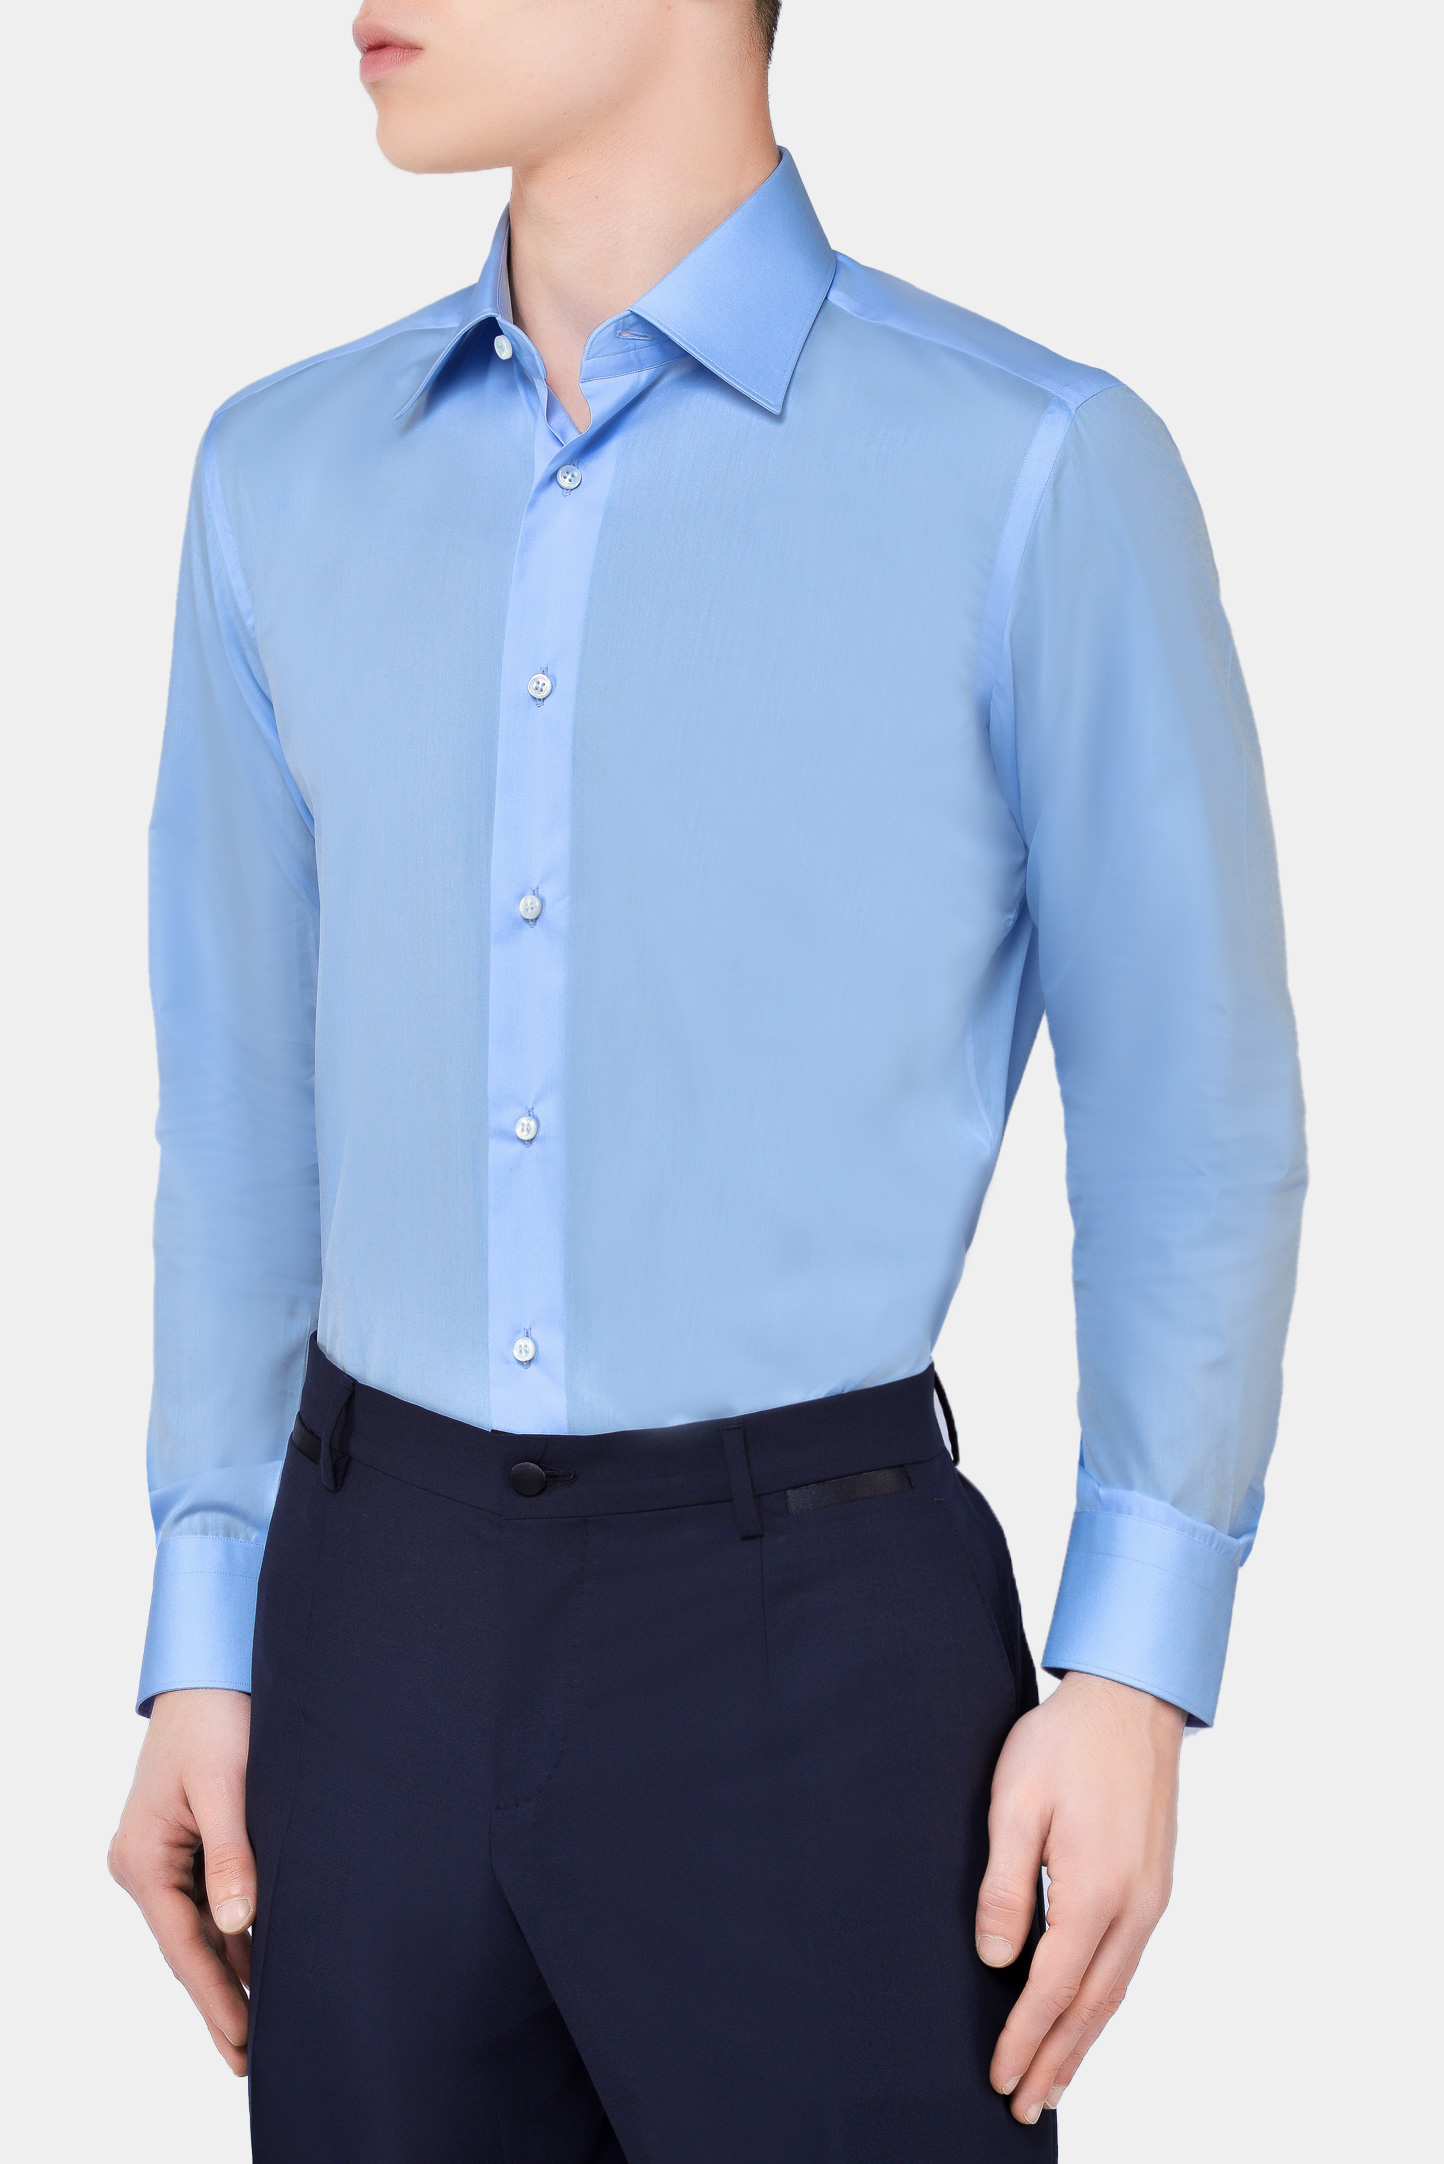 Рубашка BRIONI RCL88Y PZ024, цвет: Голубой, Мужской